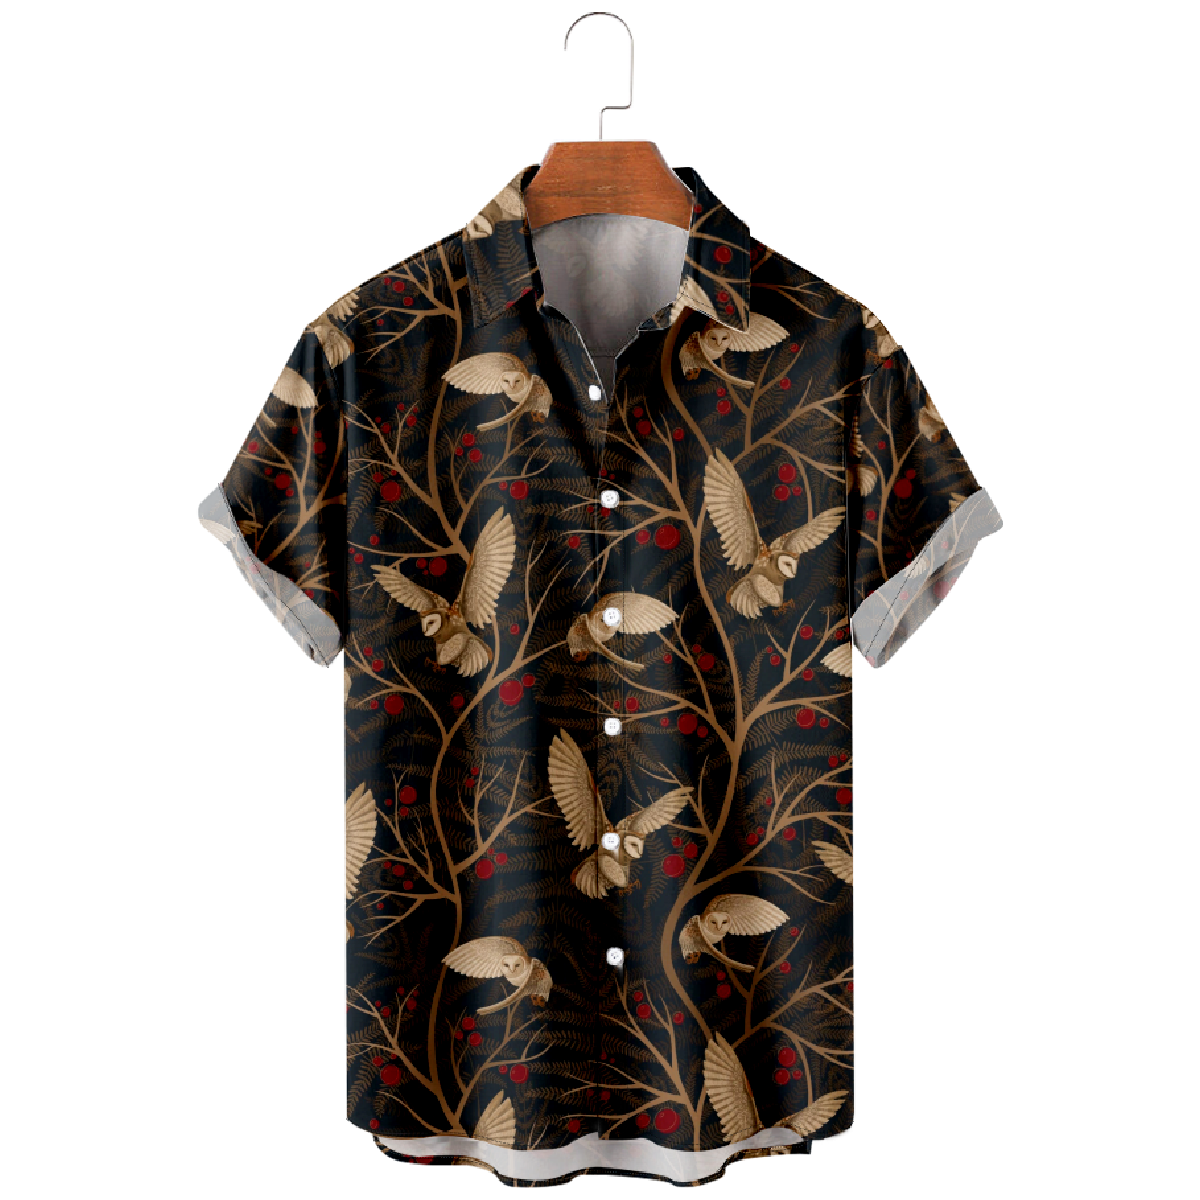 Cute Owl Print Button Up Shirt Mens Short Sleeve Shirt Regular Fit Straight Collar 